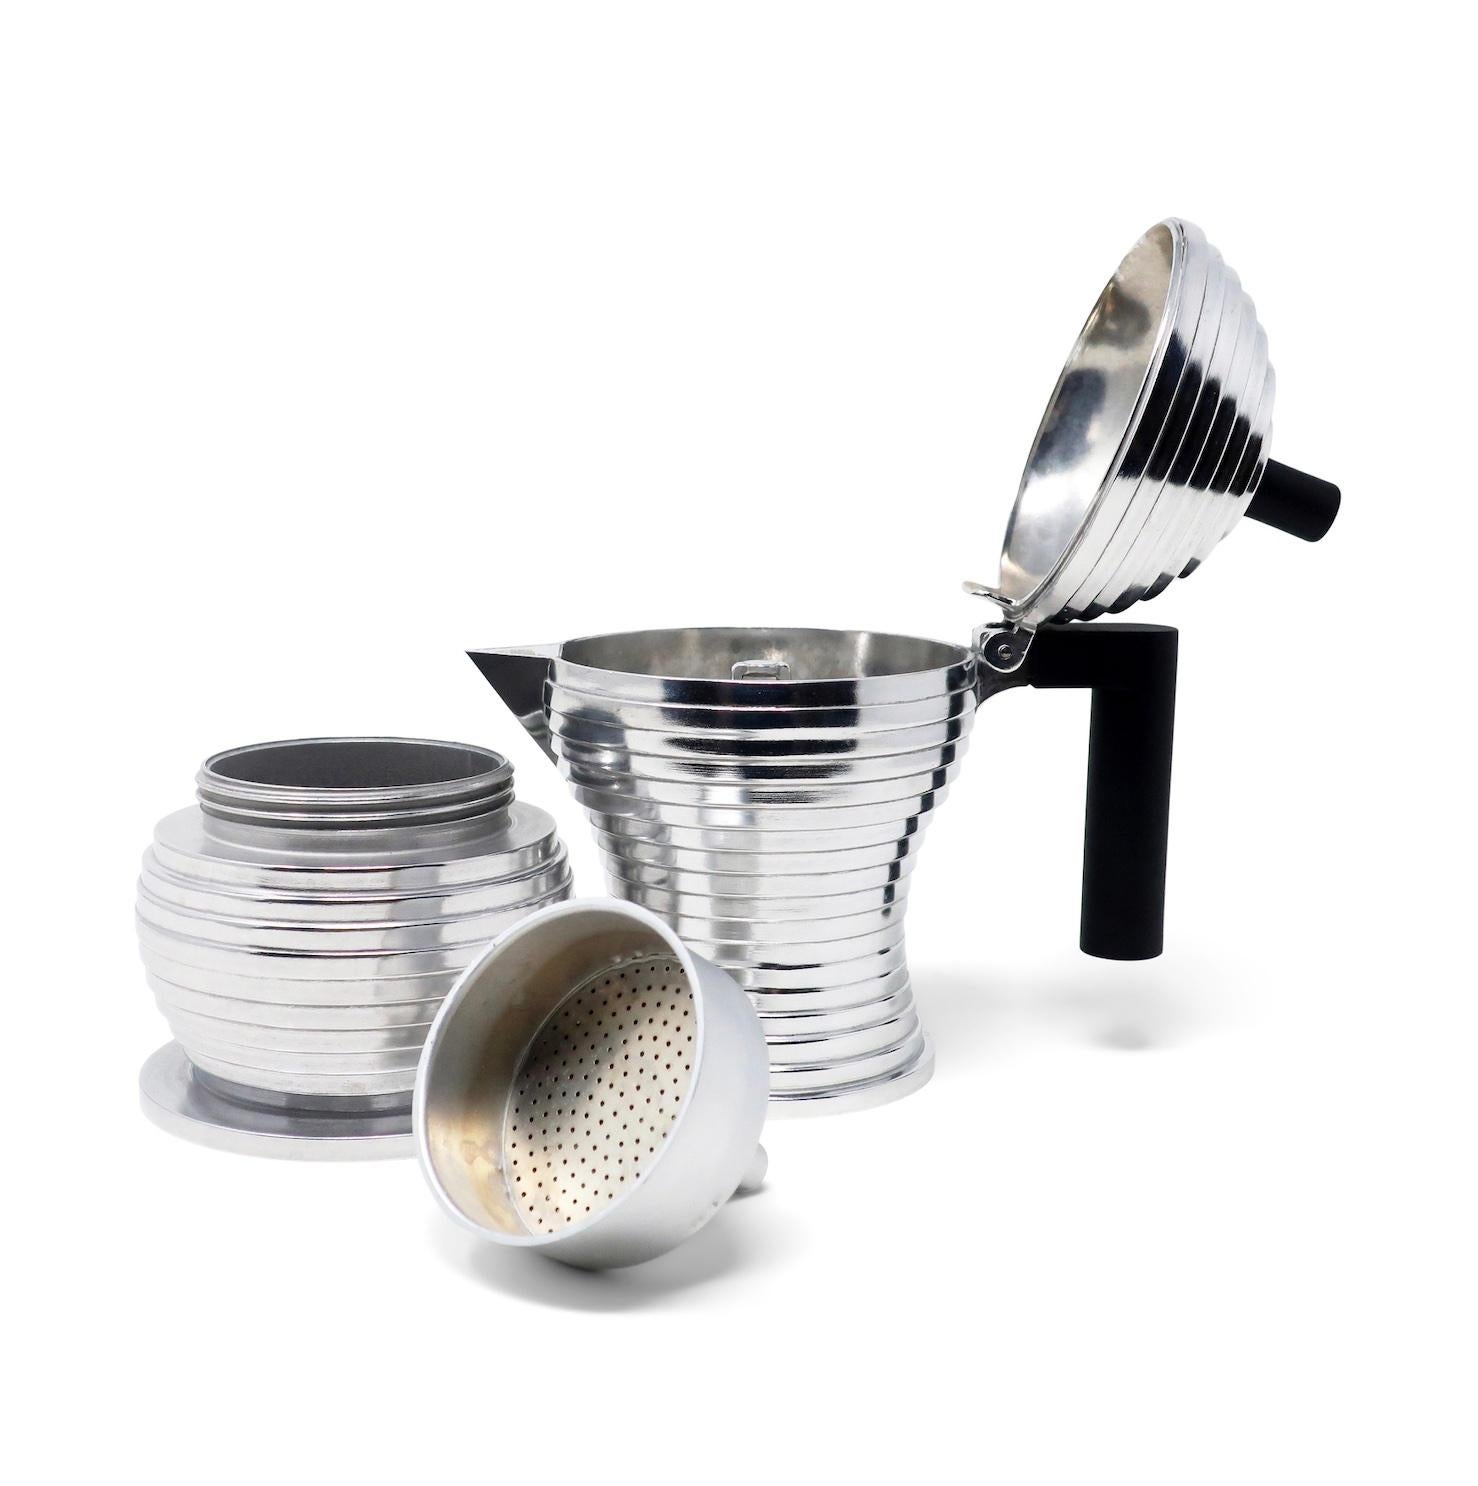 Aluminum Pulcina Espresso Maker by Michele De Lucchi for Alessi